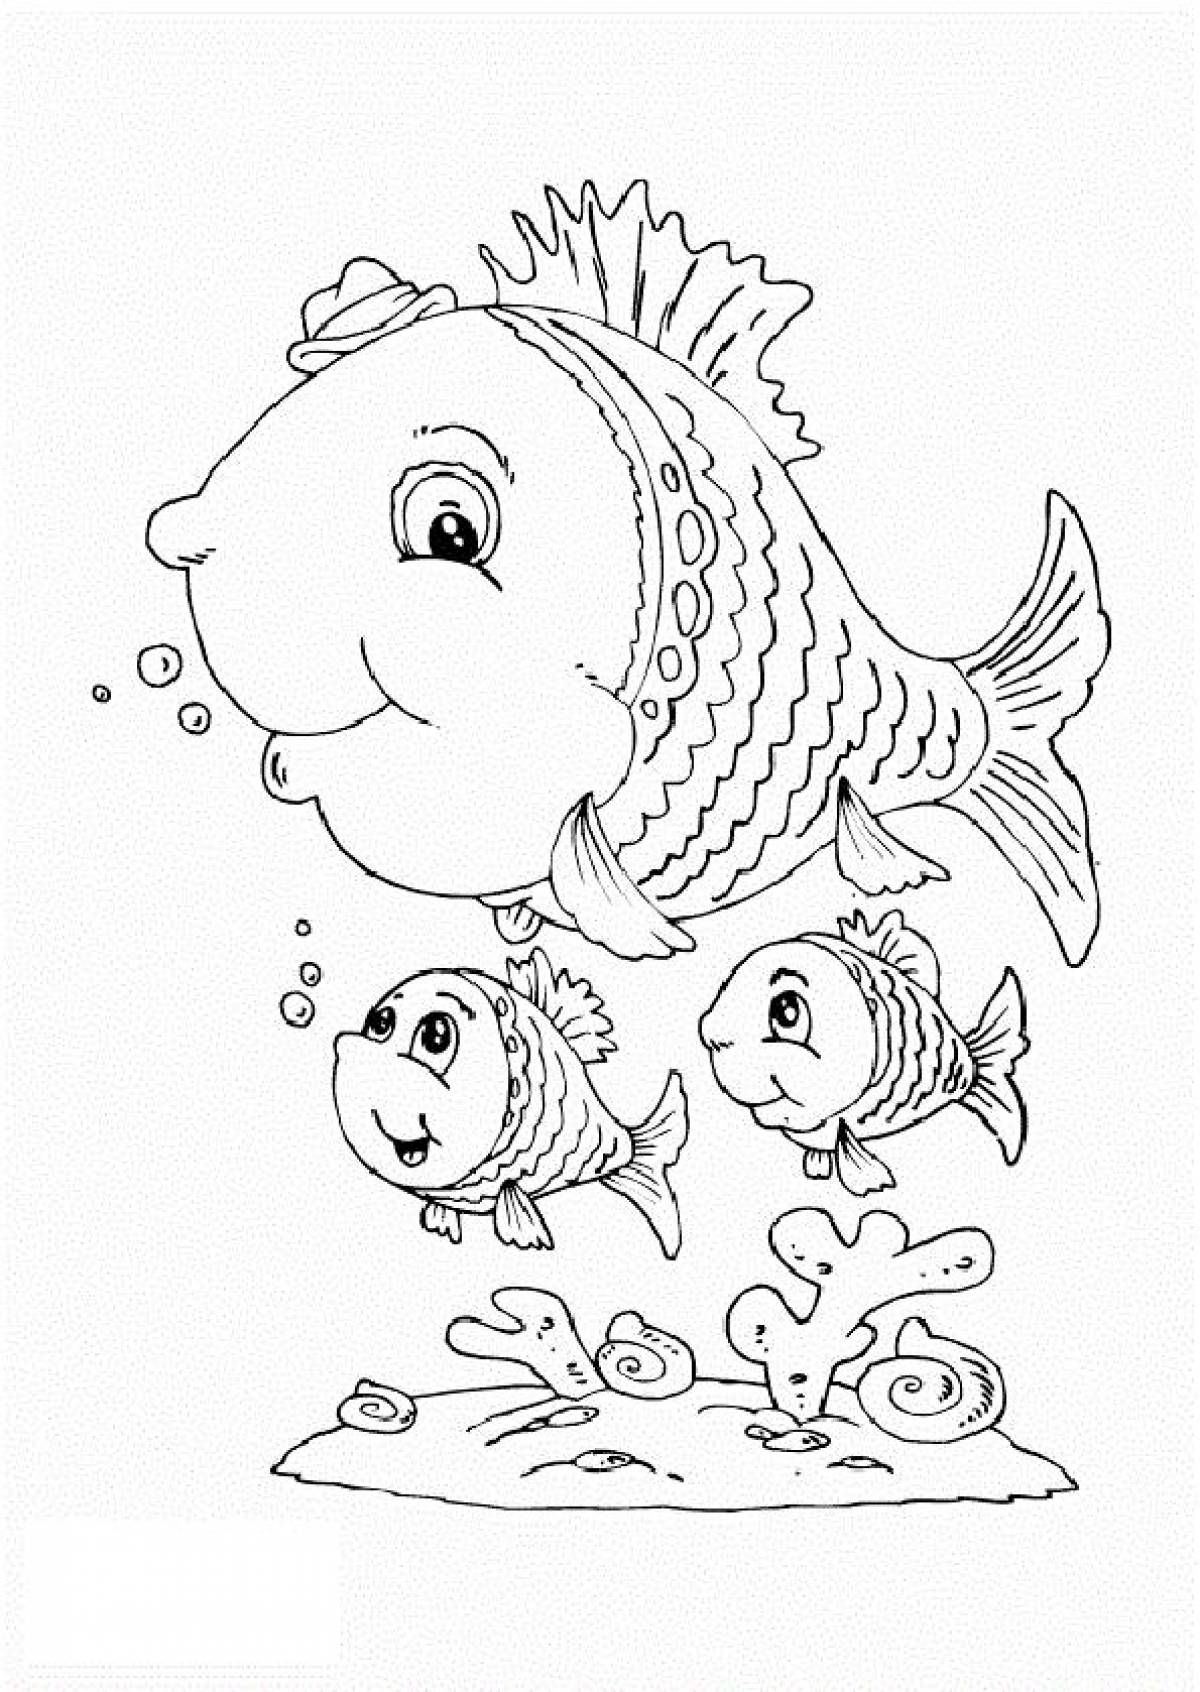 Fish coloring book